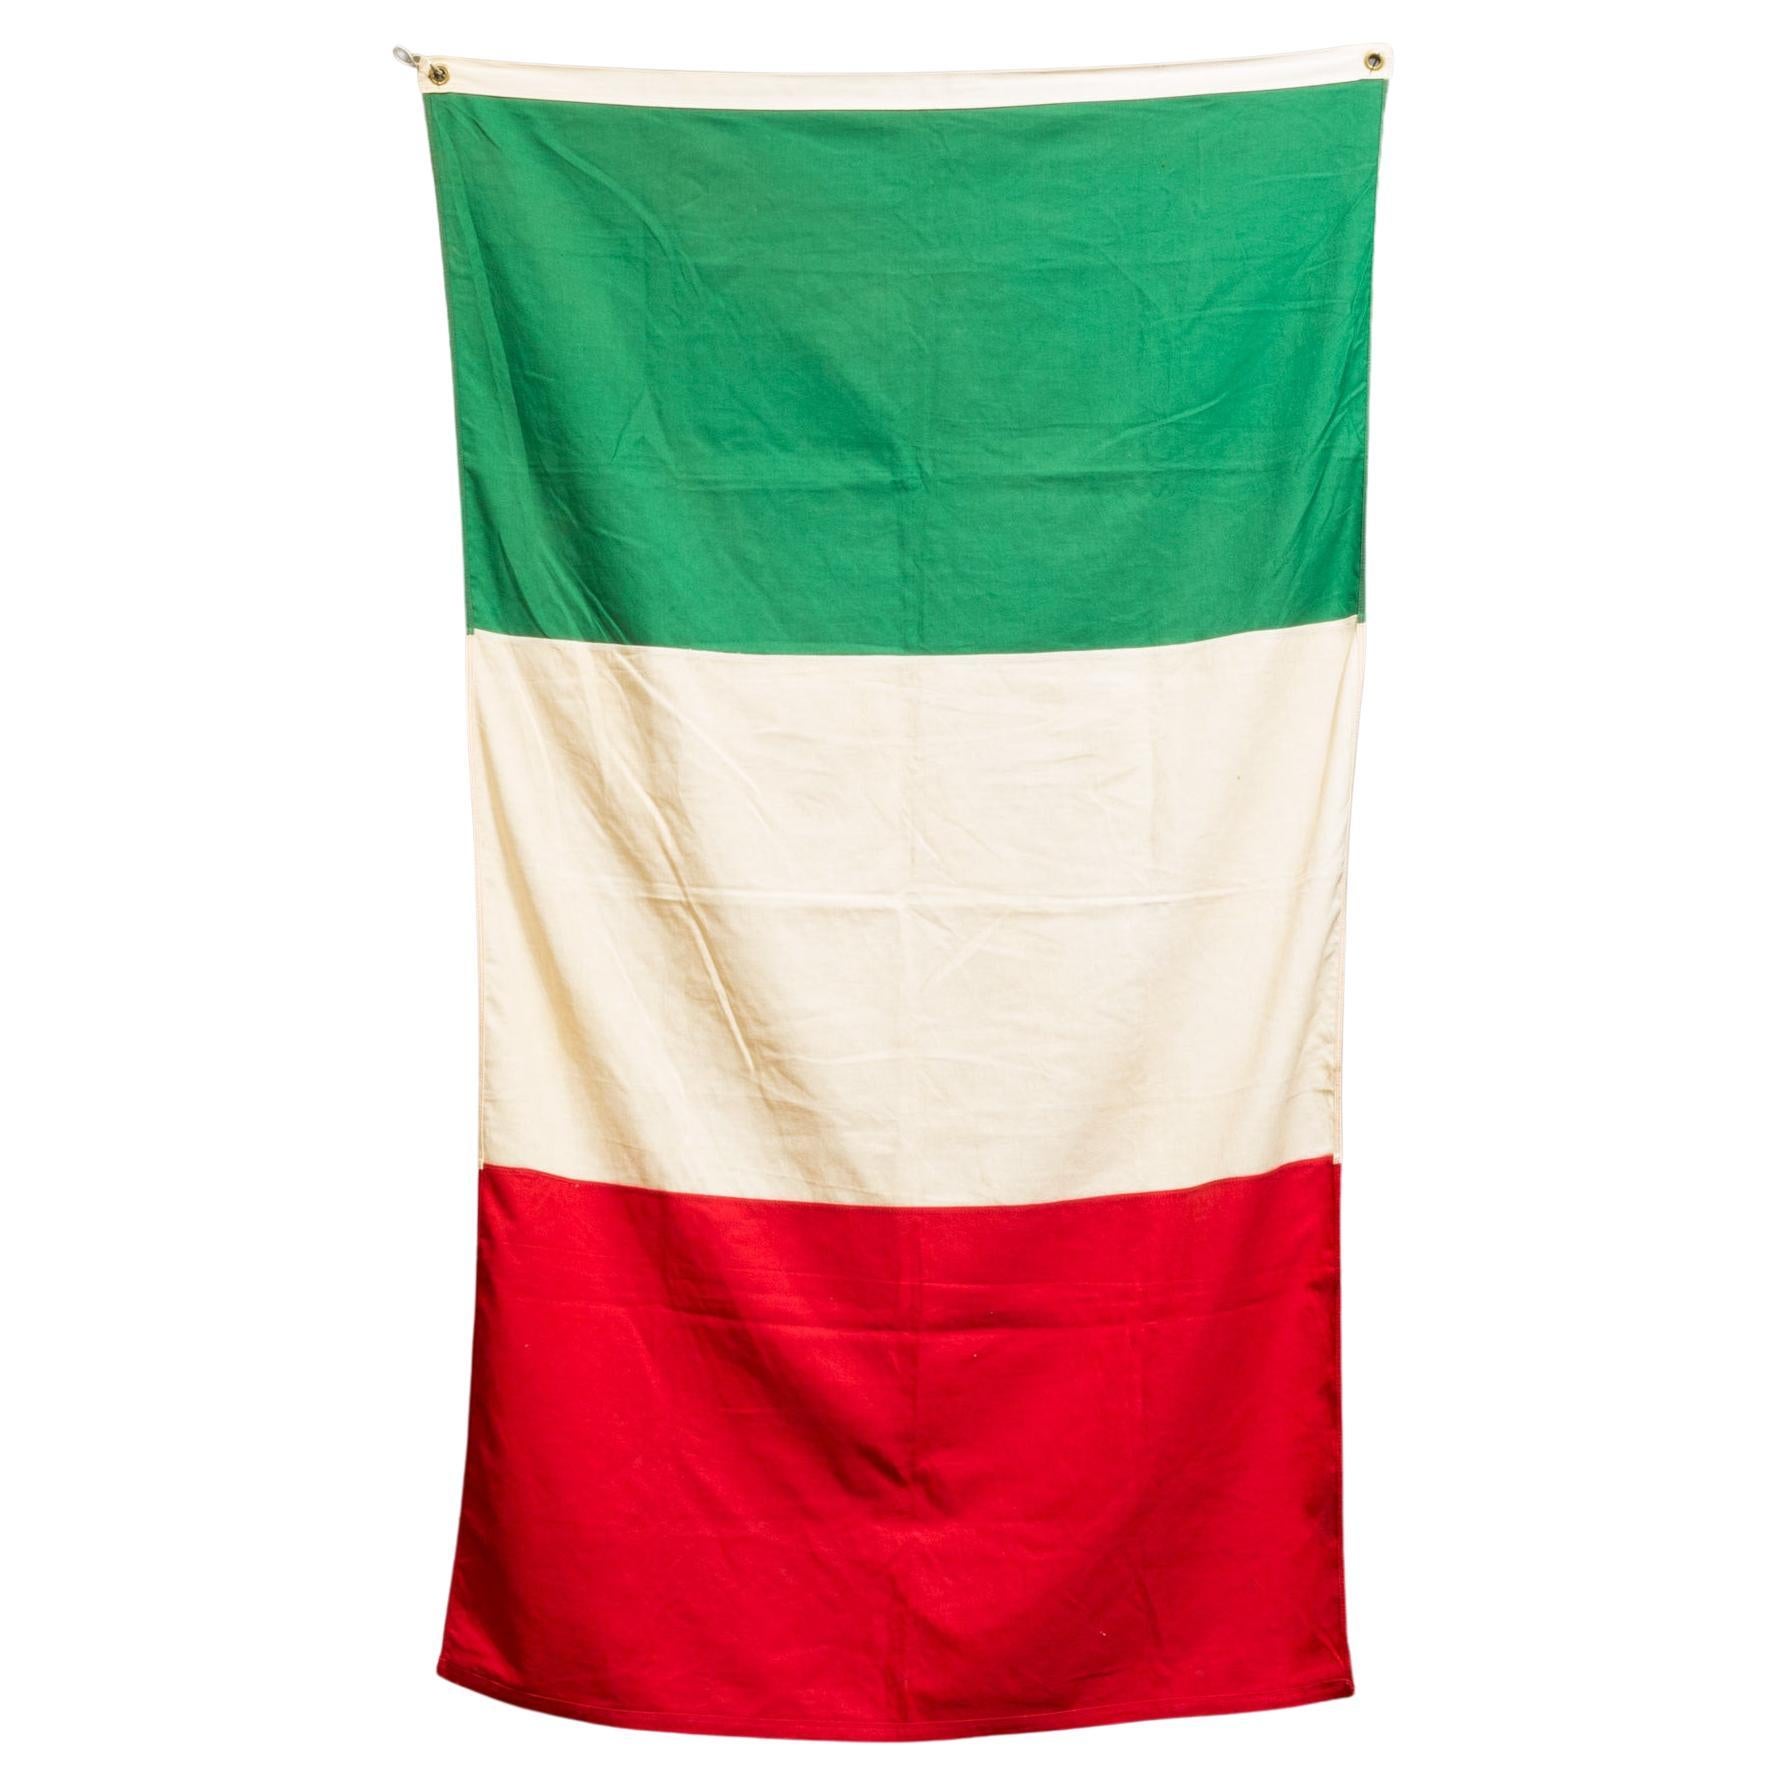 Vintage Italienische Flagge um 1940  (KOSTENLOSER VERSAND)